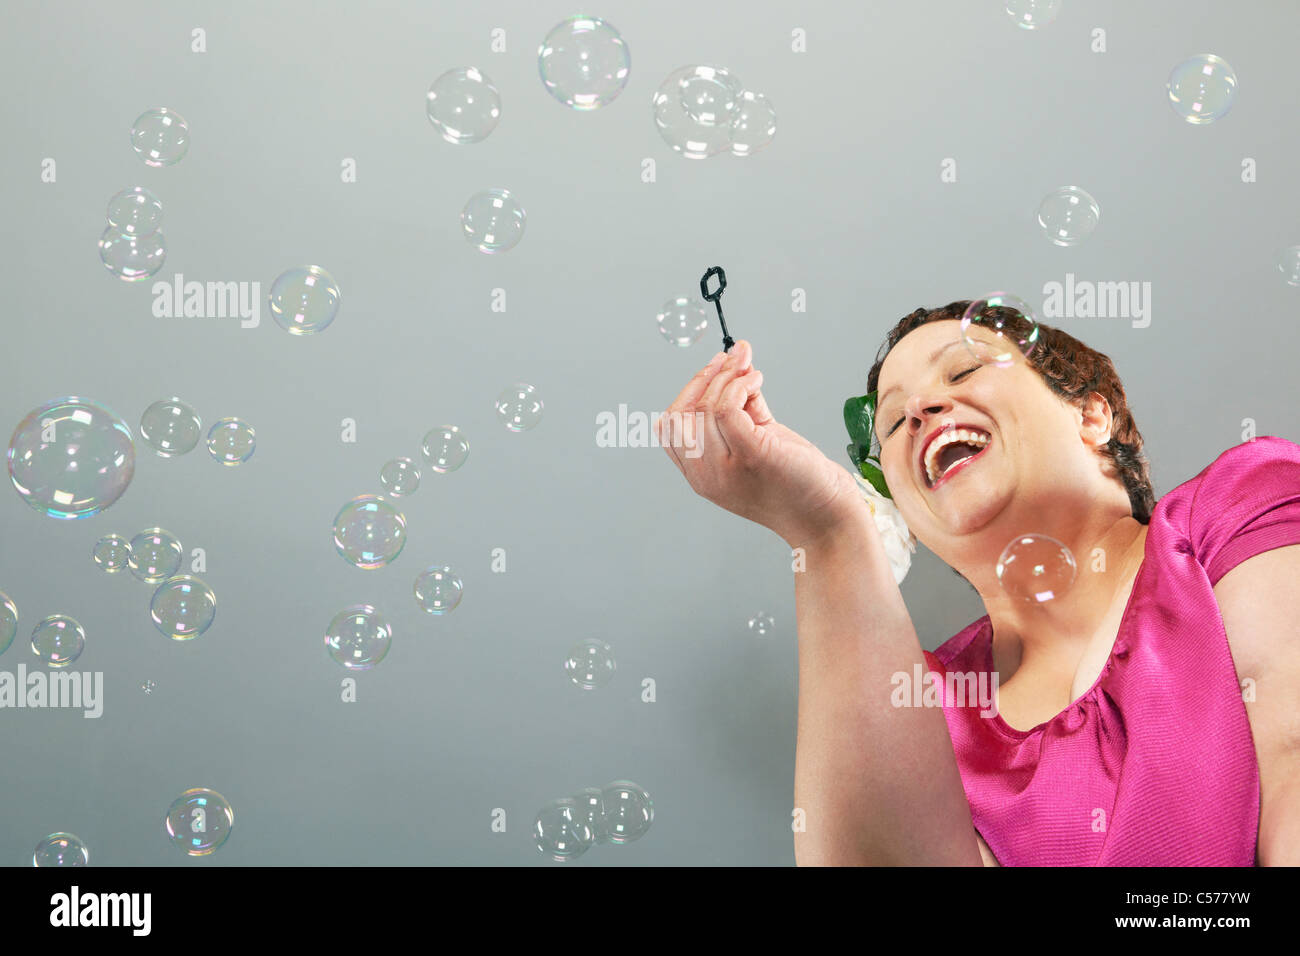 Gran mujer soplando burbujas Foto de stock